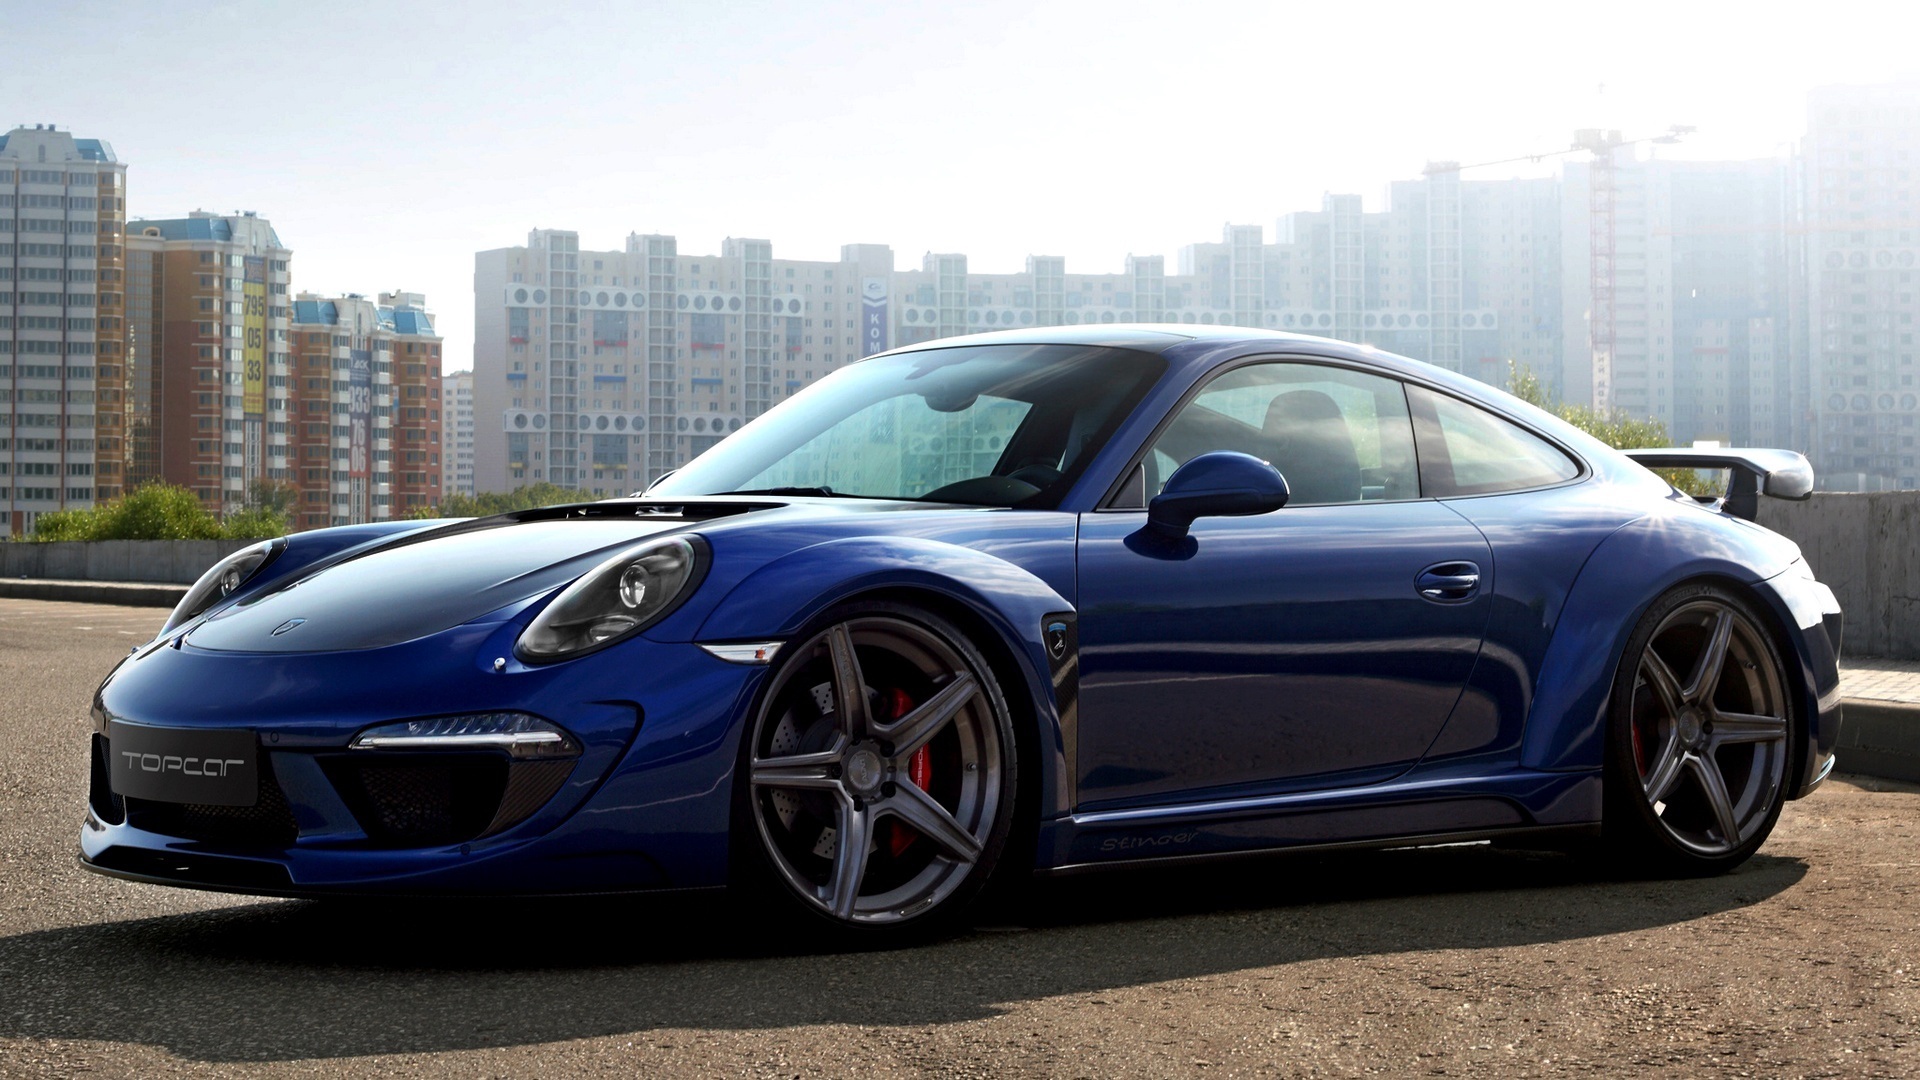 Wallpaper Porsche 911, Carrera, Blue, Side View - Porsche 911 Carrera Tuning - HD Wallpaper 